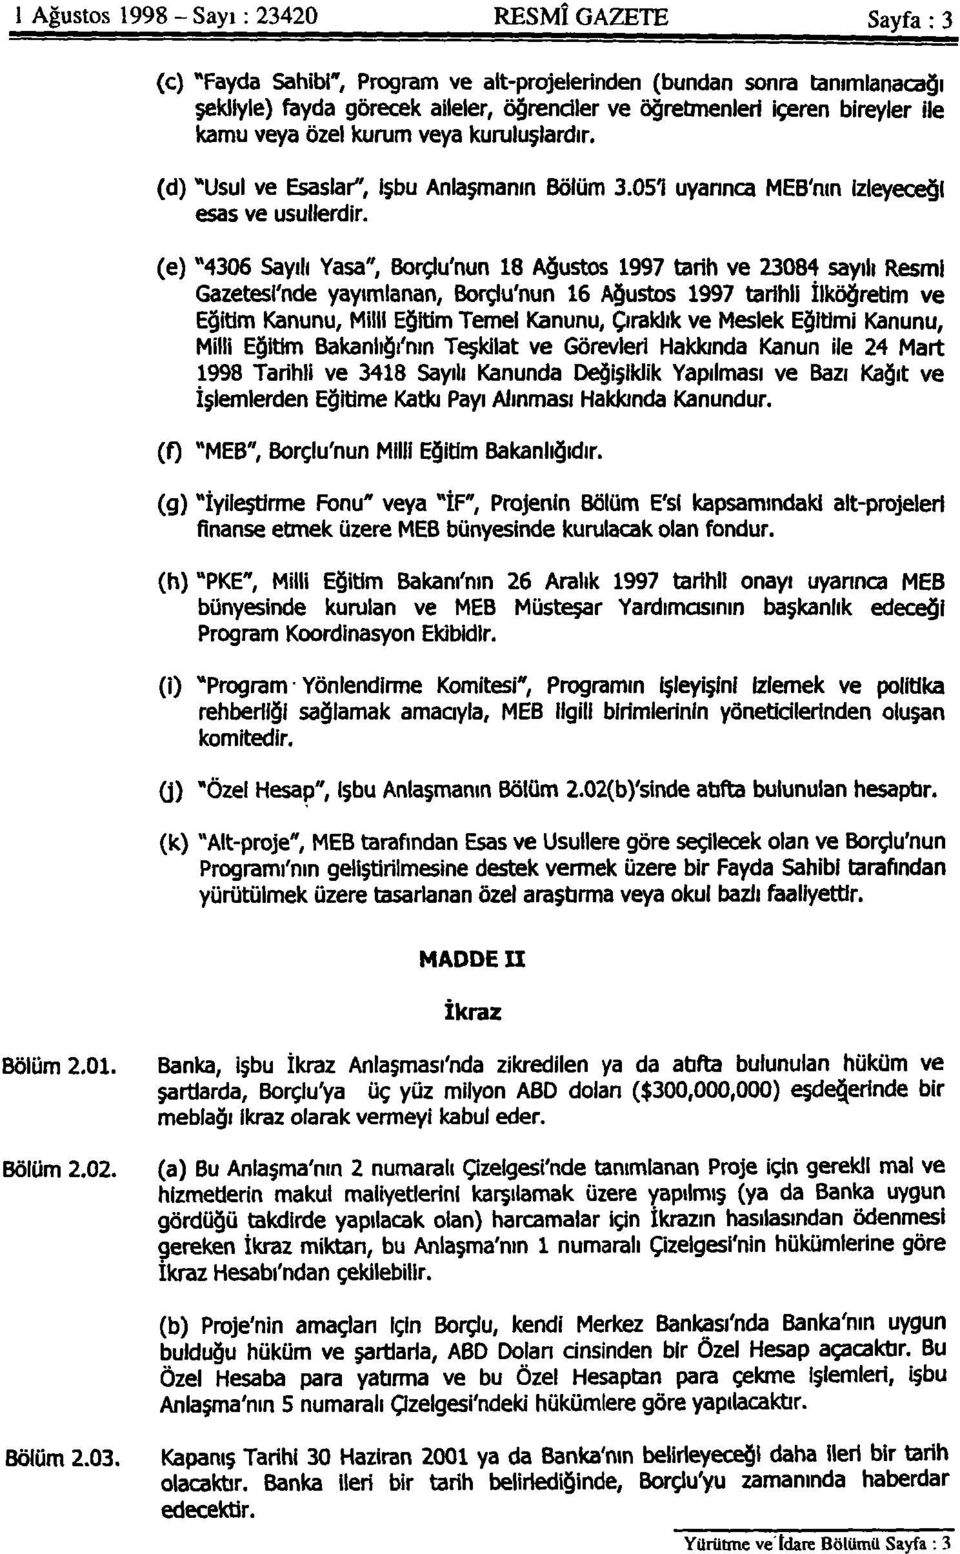 (e) "4306 Sayılı Yasa", Borçlu'nun 18 Ağustos 1997 tarih ve 23084 sayılı Resmi Gazetesl'nde yayımlanan, Borçlu'nun 16 Ağustos 1997 tarihli İlköğretim ve Eğitim Kanunu, Milli Eğitim Temel Kanunu,